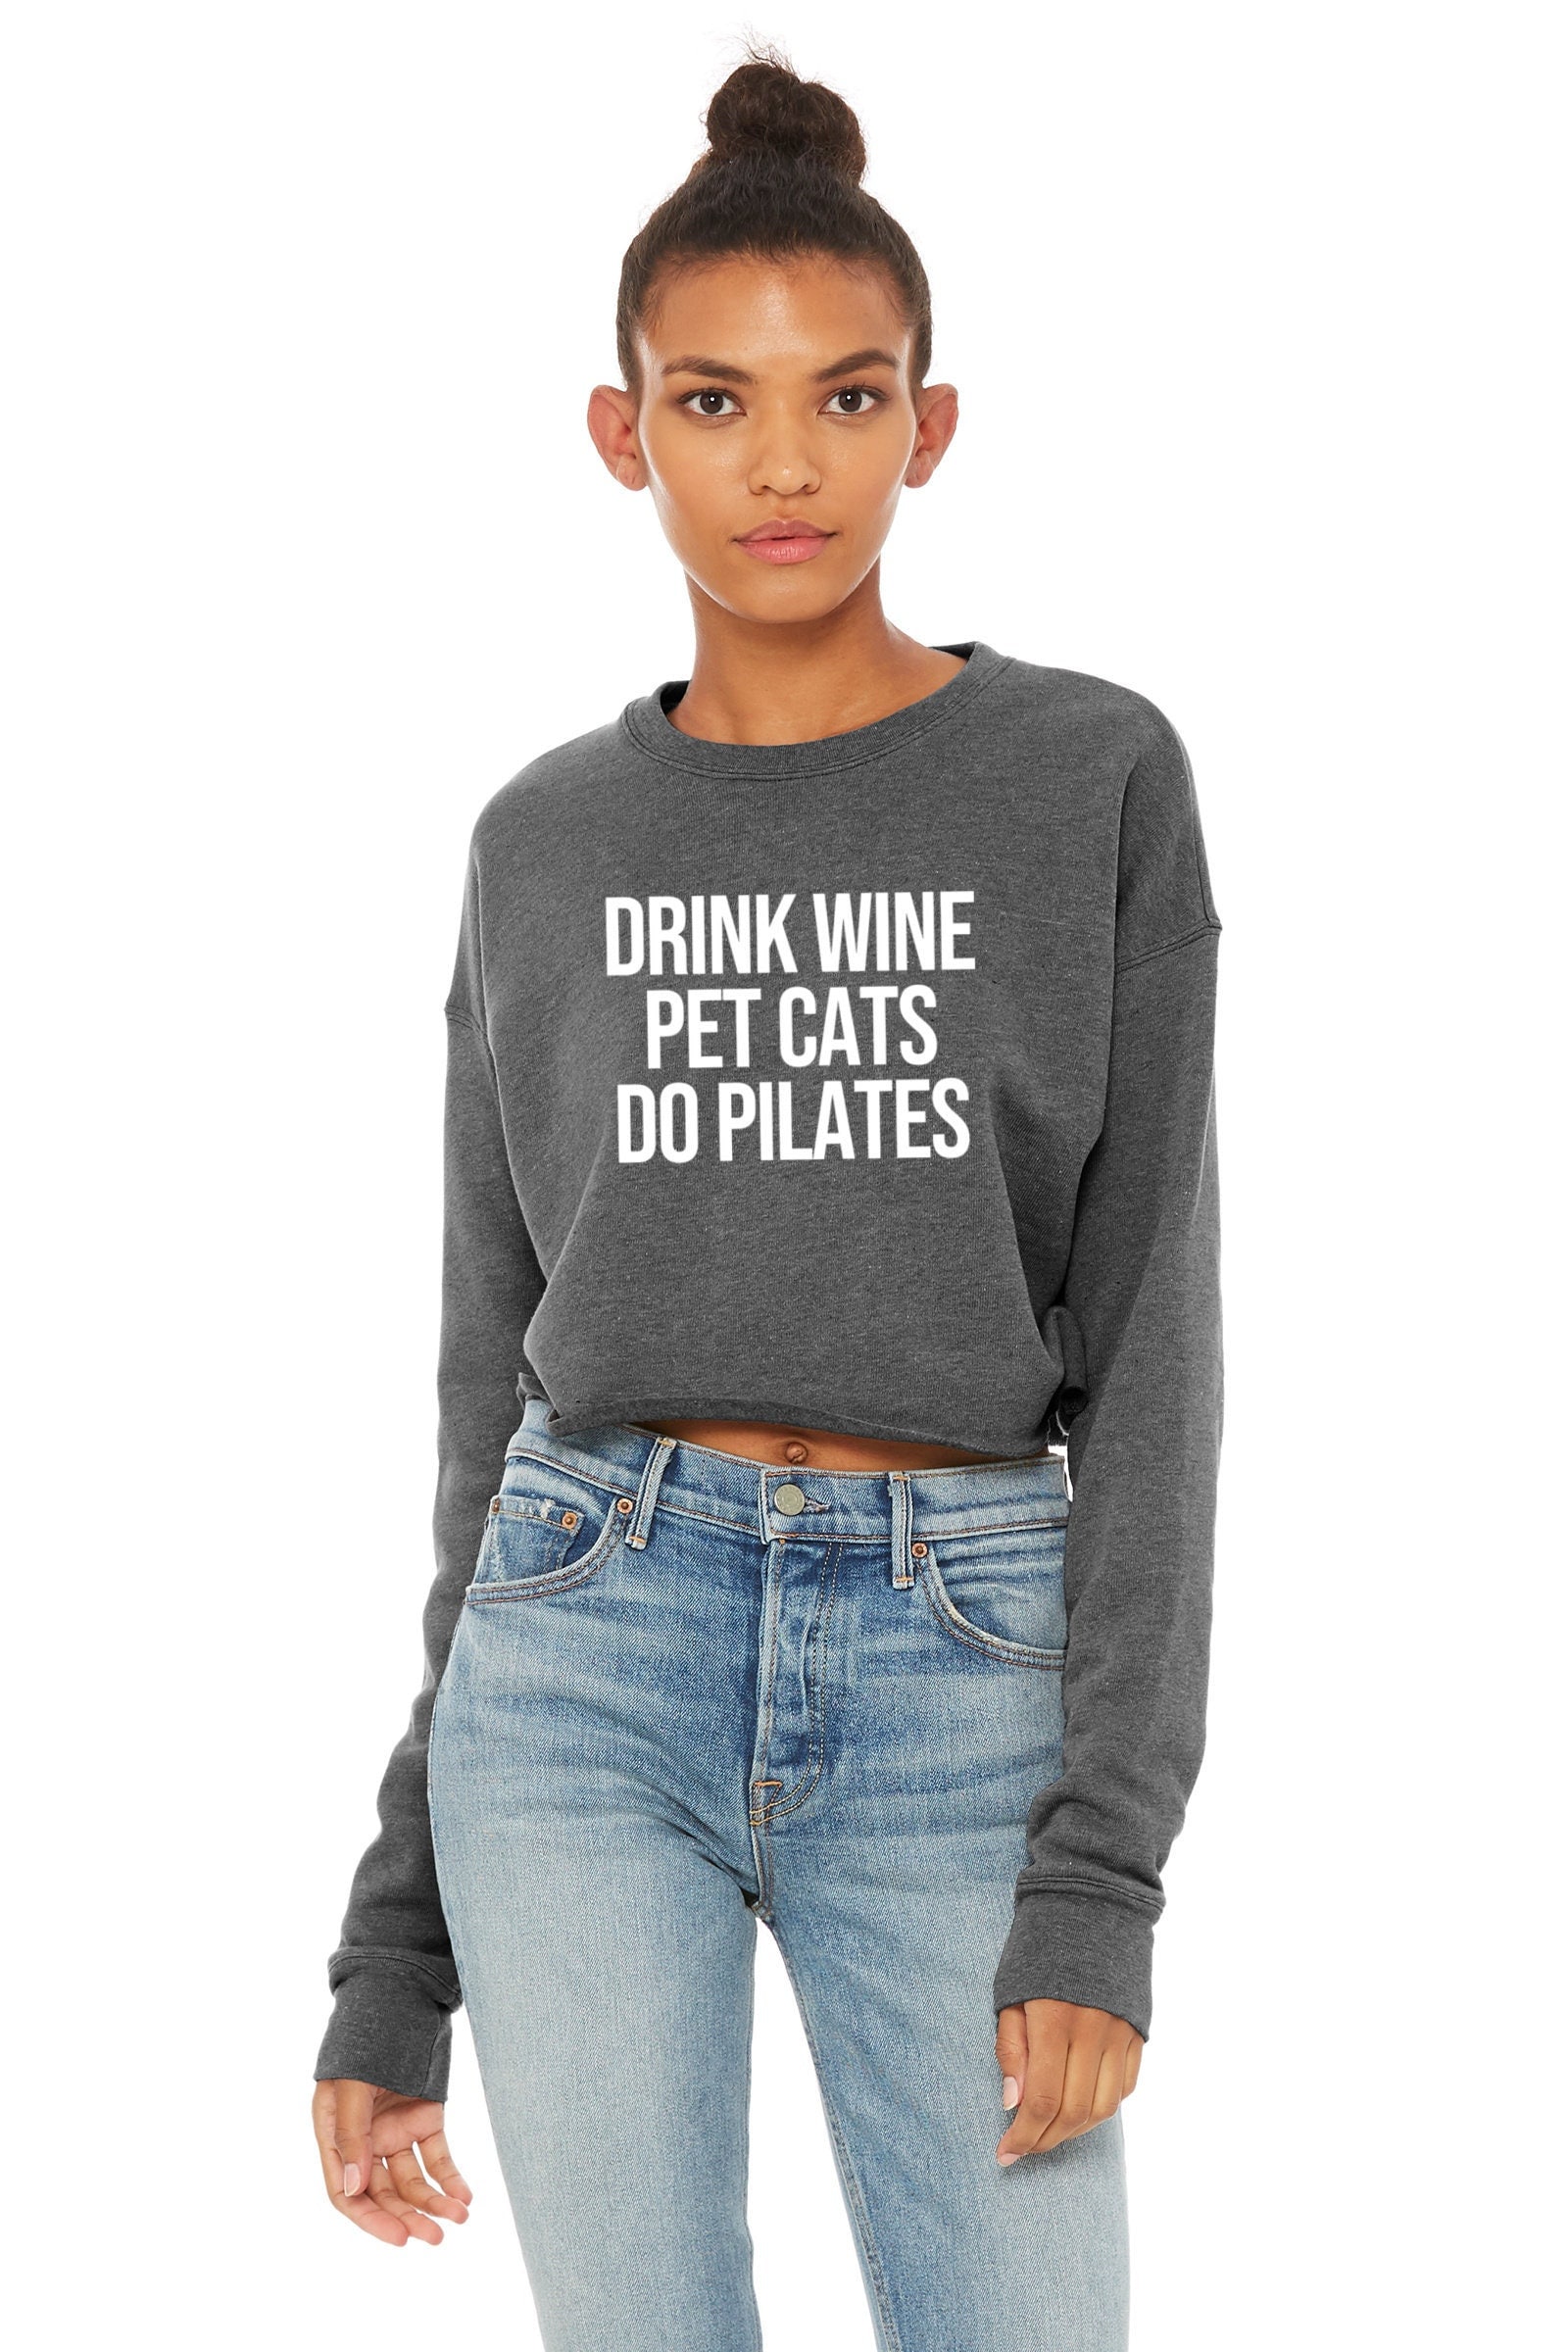 Pilates Sweatshirt Pilates Shirts Women Women's Pilates Shirt Cropped  Sweatshirt Drink Wine Pet Cats Do Pilates -  Canada